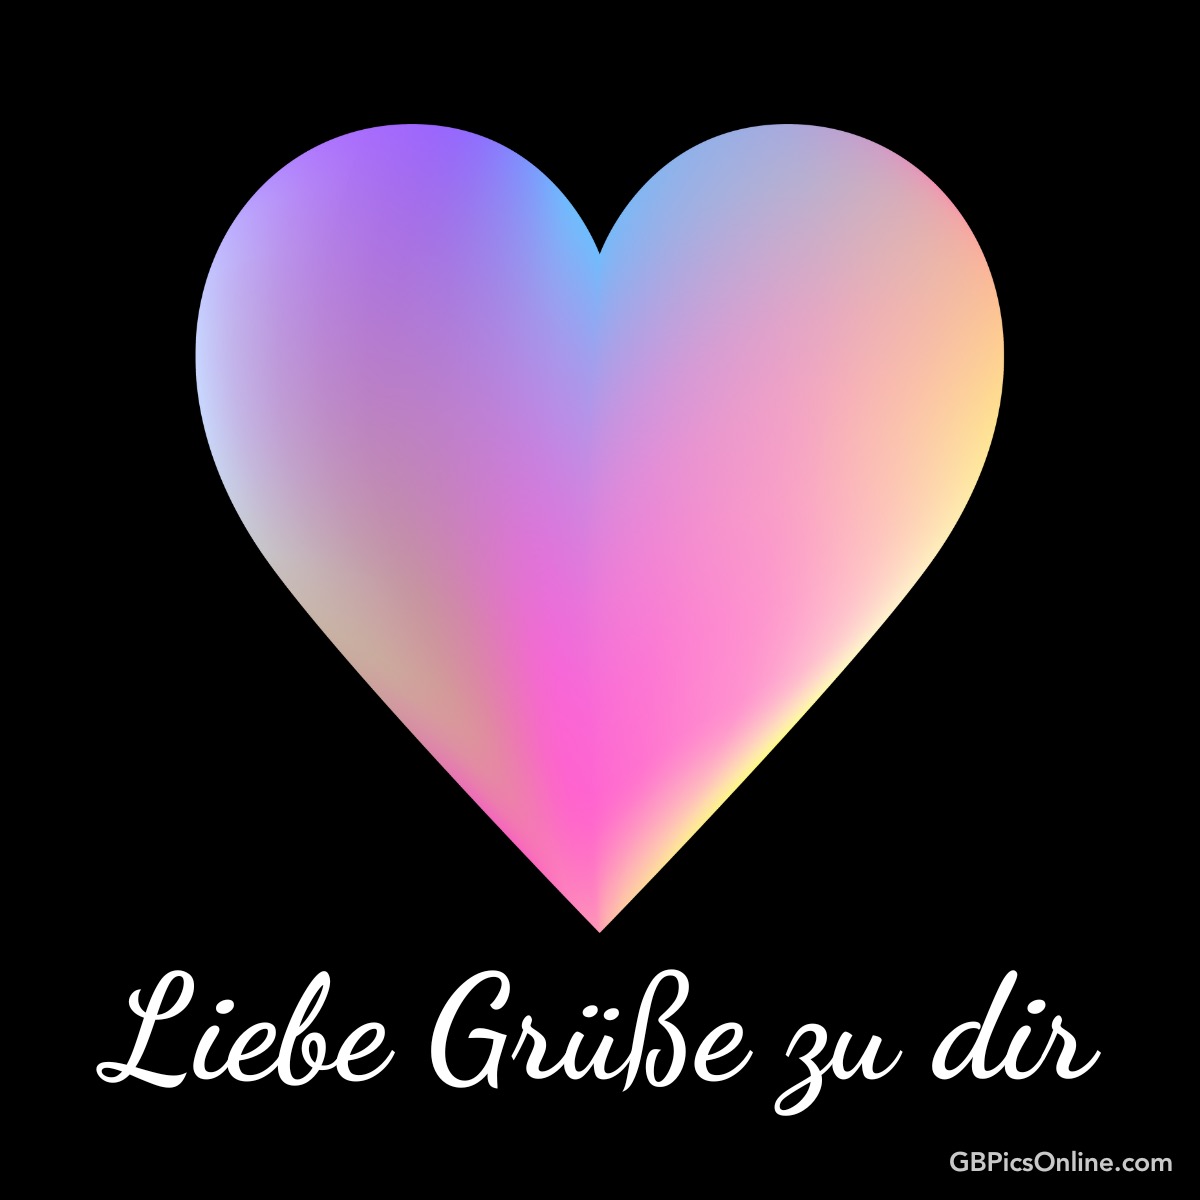 Ein buntes Herz mit der Aufschrift „Liebe Grüße zu dir“ auf schwarzem Hintergrund